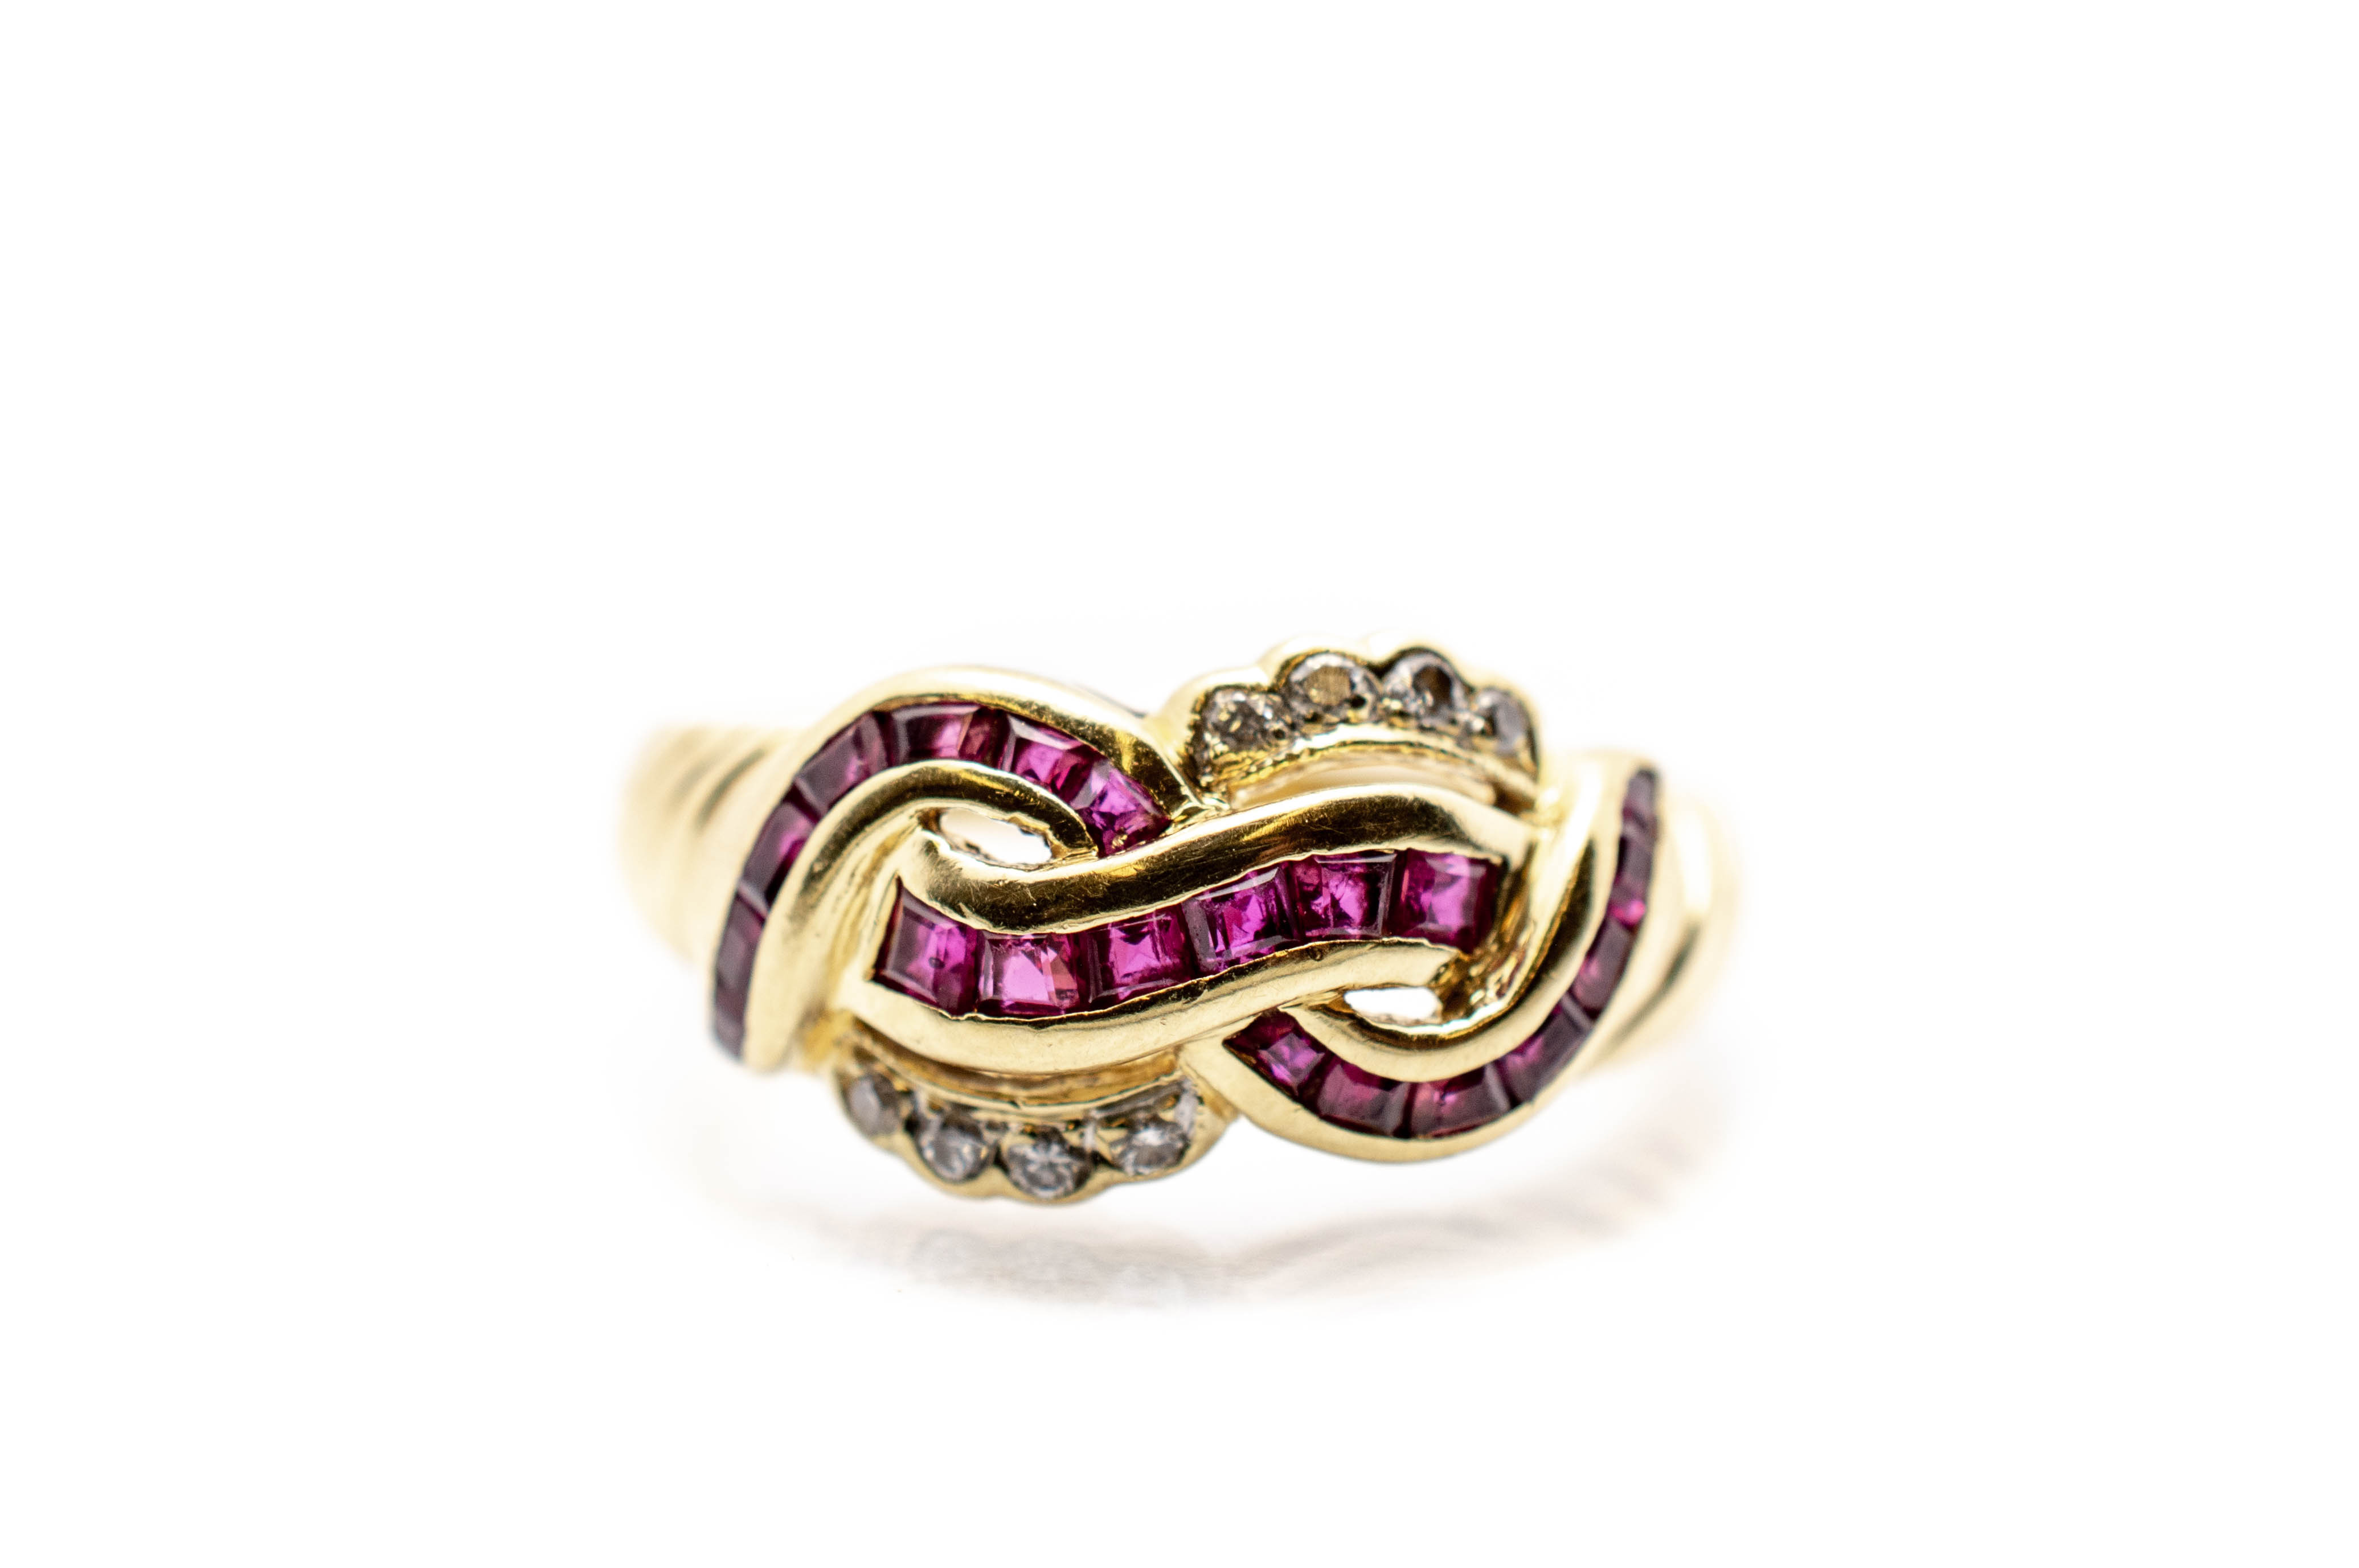 Zlatý prsten s diamanty a rubíny, vel. 53